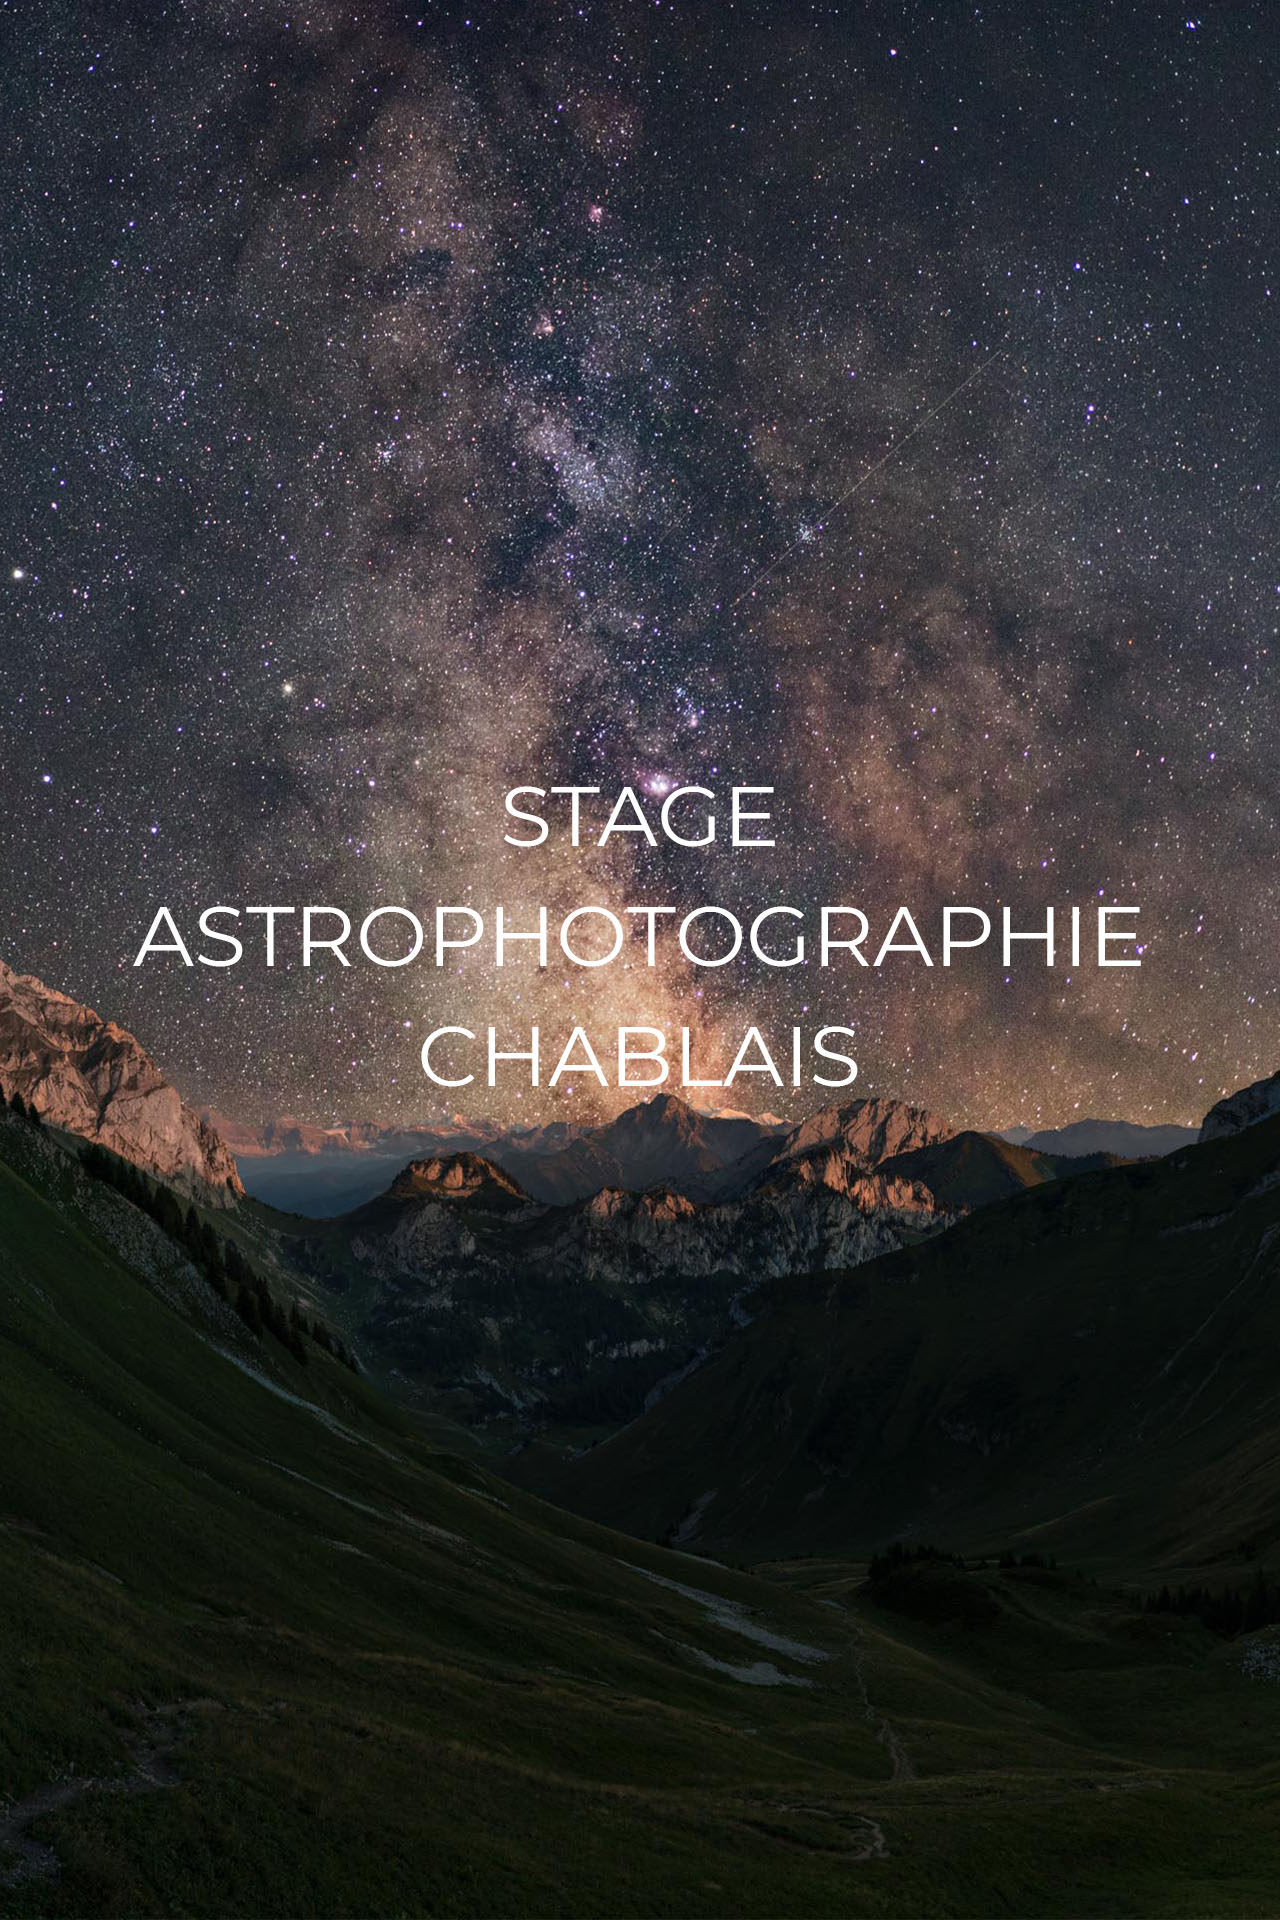 Stage astrophotographie Chablais